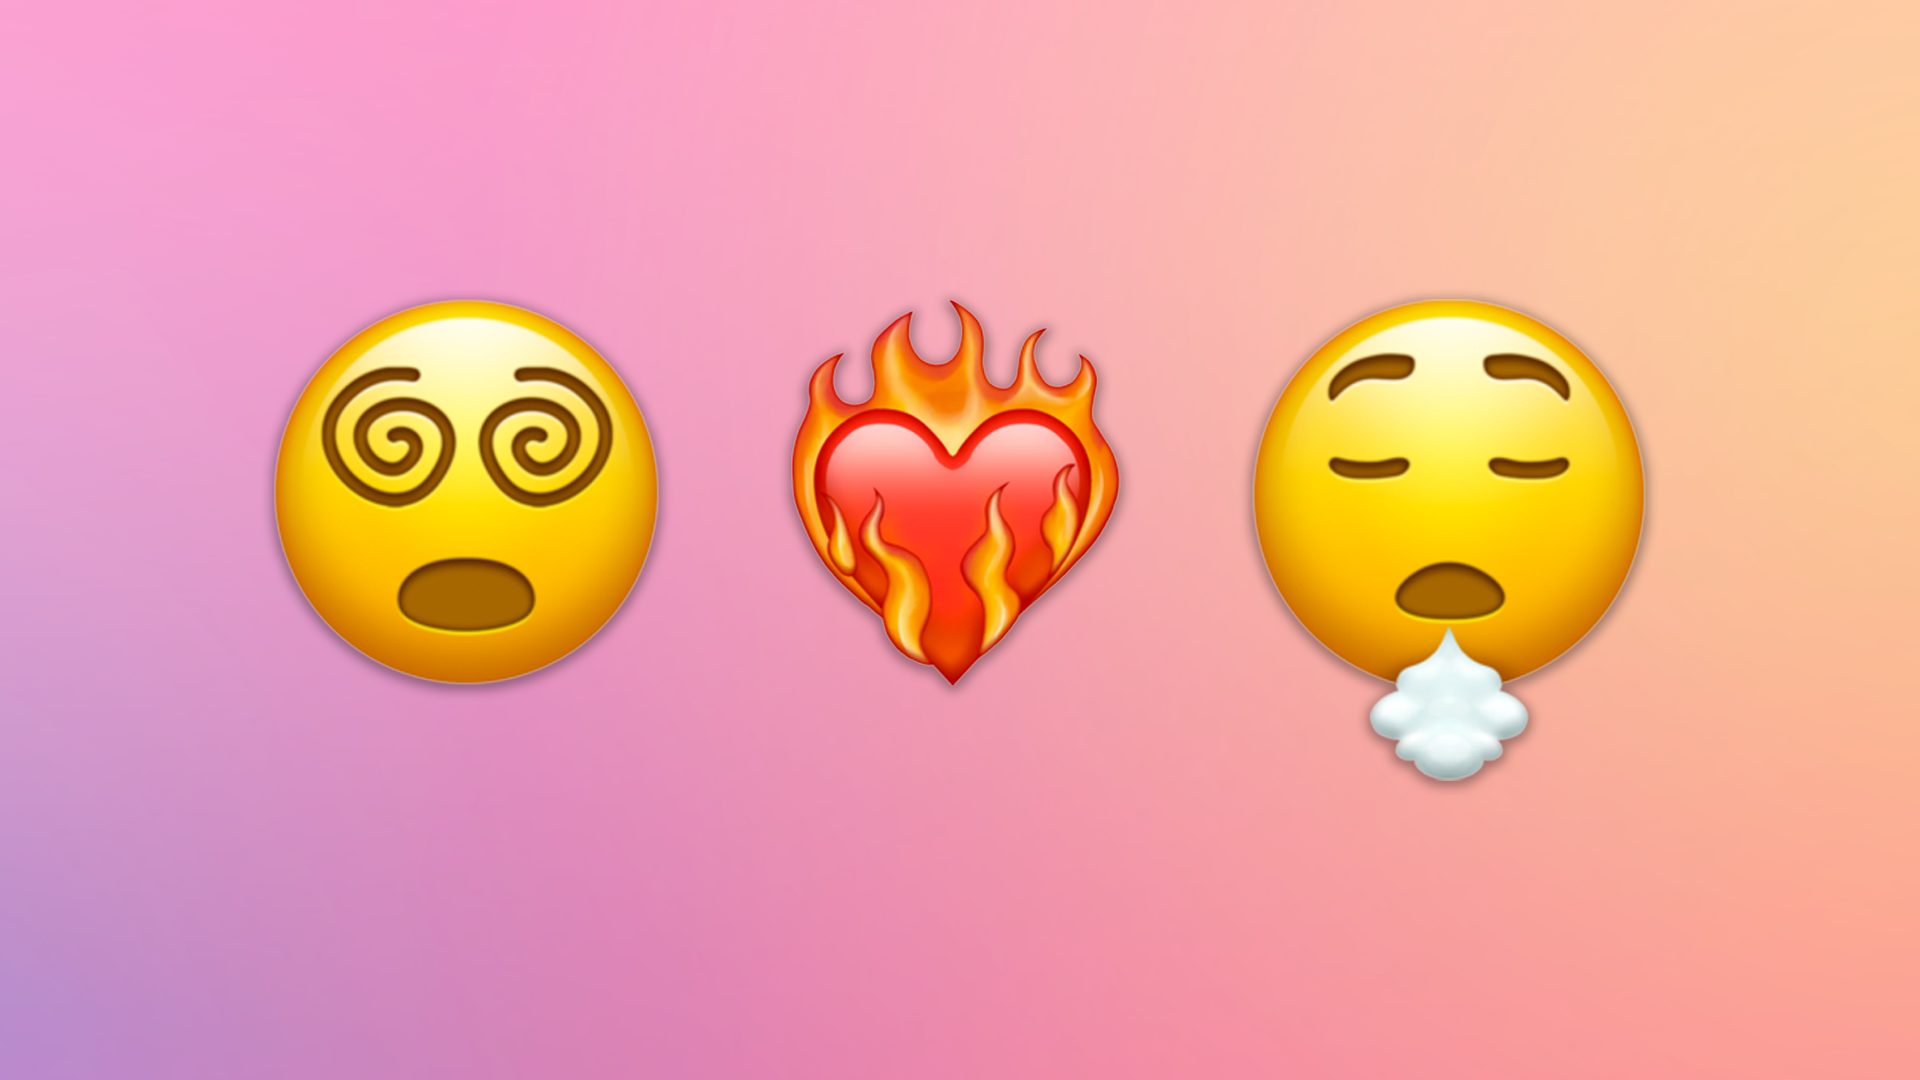 Dal Covid-19 agli incendi in Australia, ecco le emoji che raccontano il 2020 thumbnail